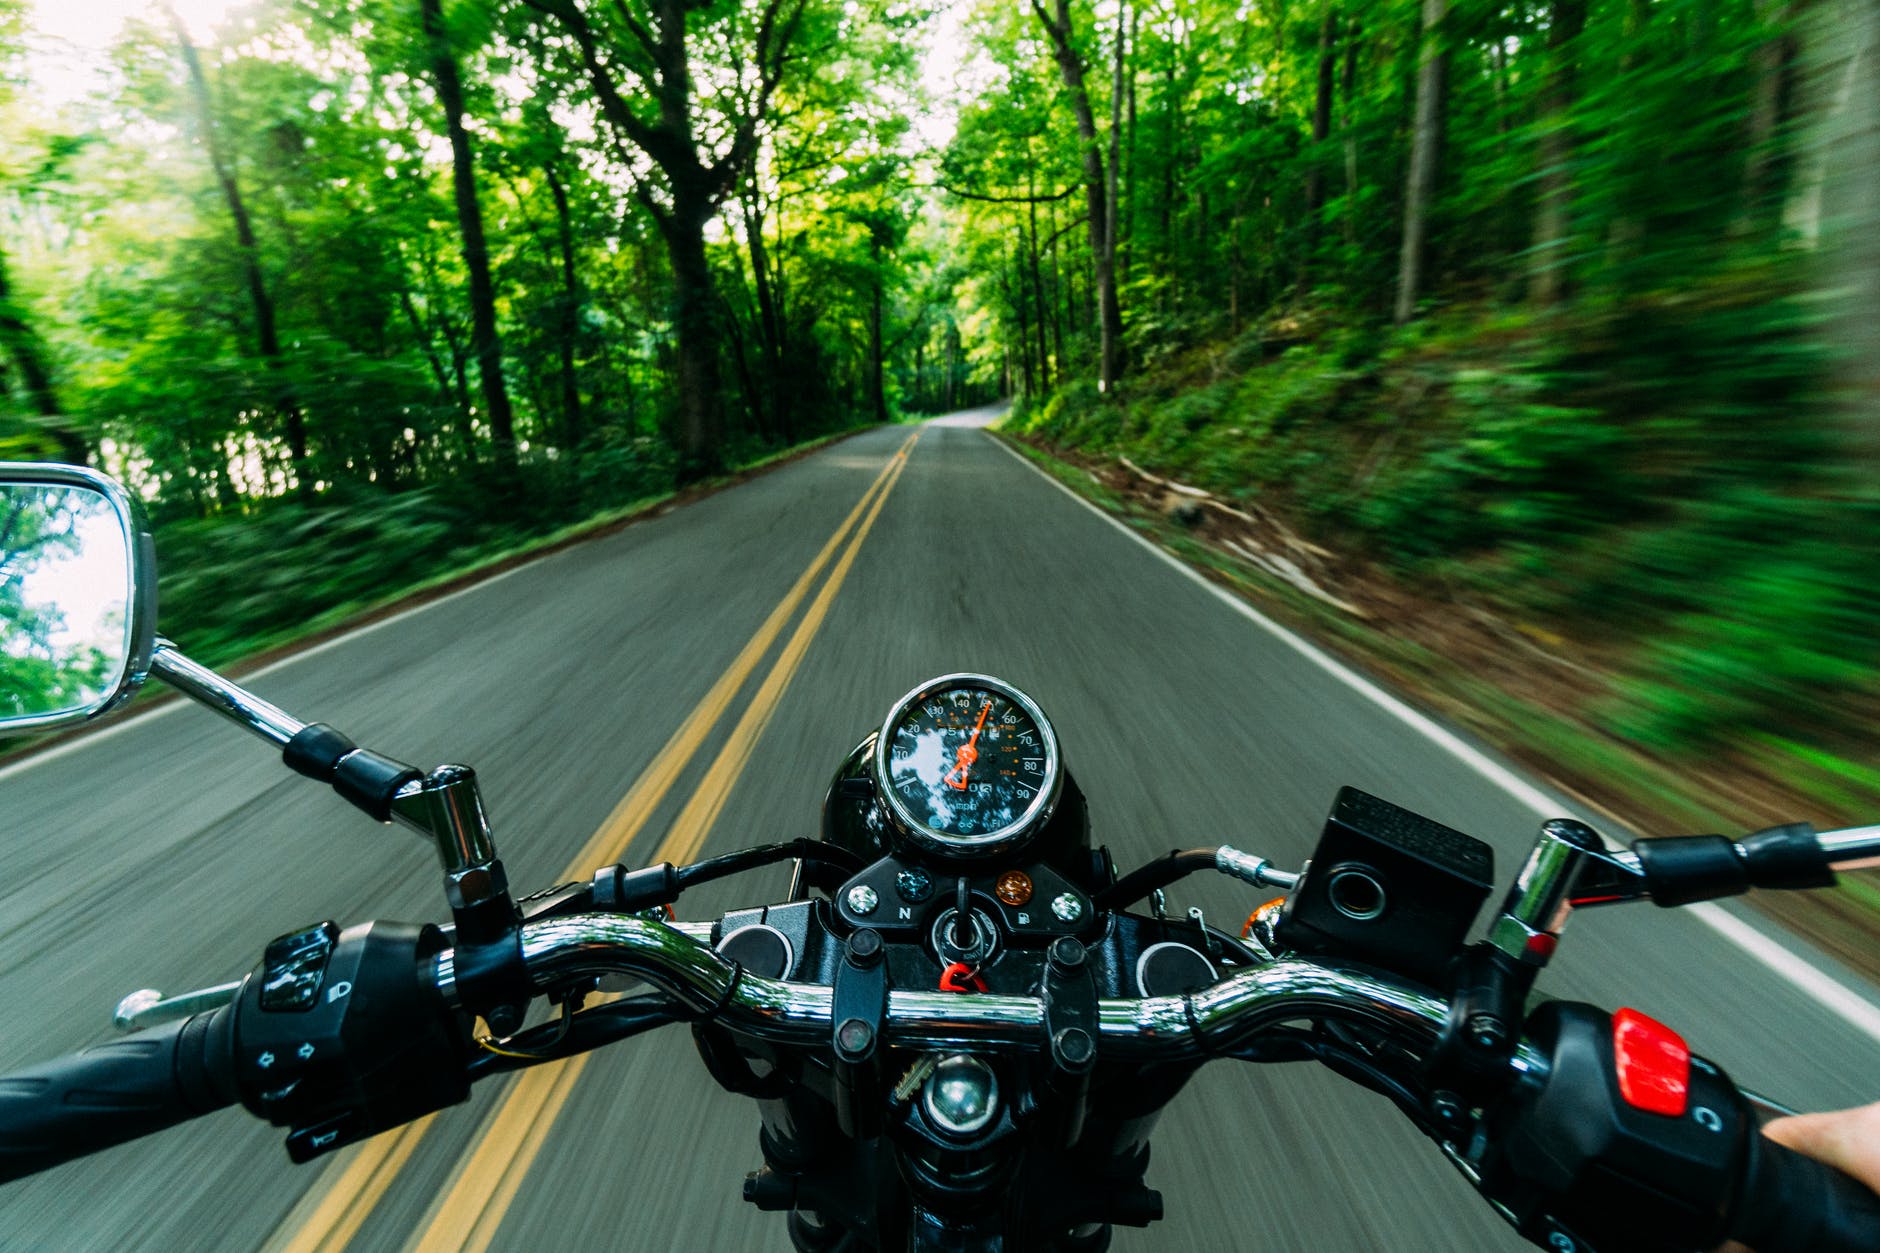 Mas, afinal, quais são as vantagens de um leilão de motos da Receita Federal? Fonte: Pexels.